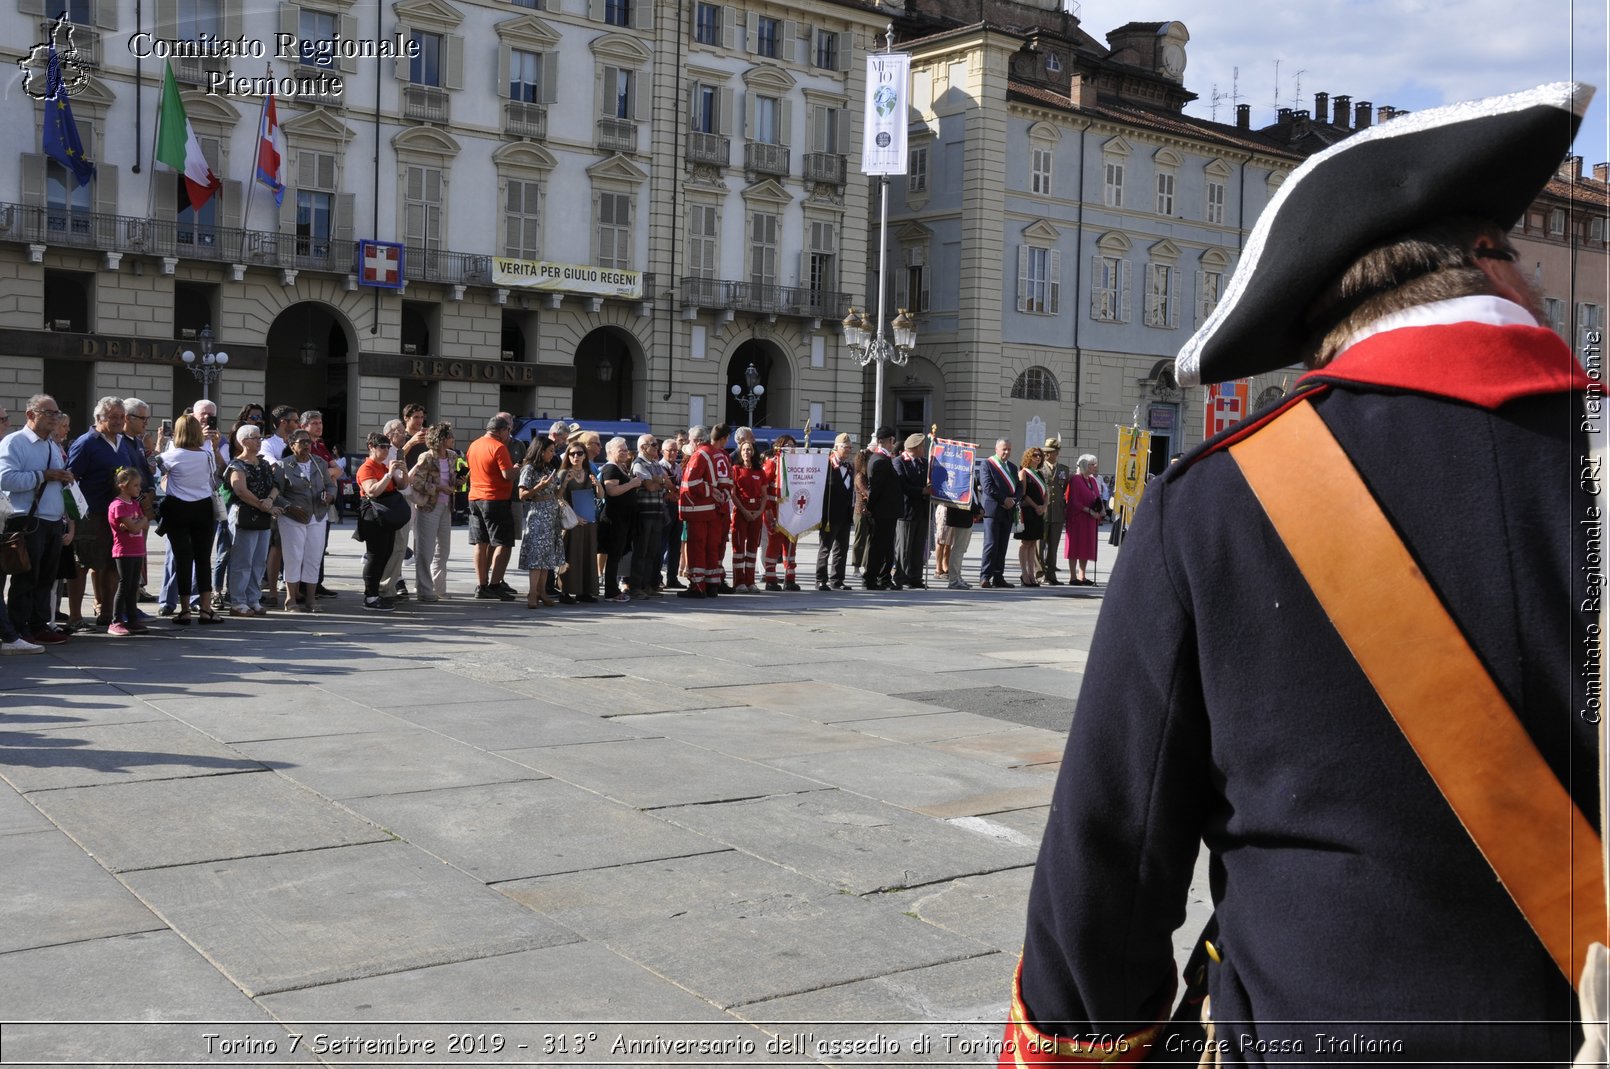 Torino 7 Settembre 2019 - 313 Anniversario dell'assedio di Torino del 1706 - Croce Rossa Italiana